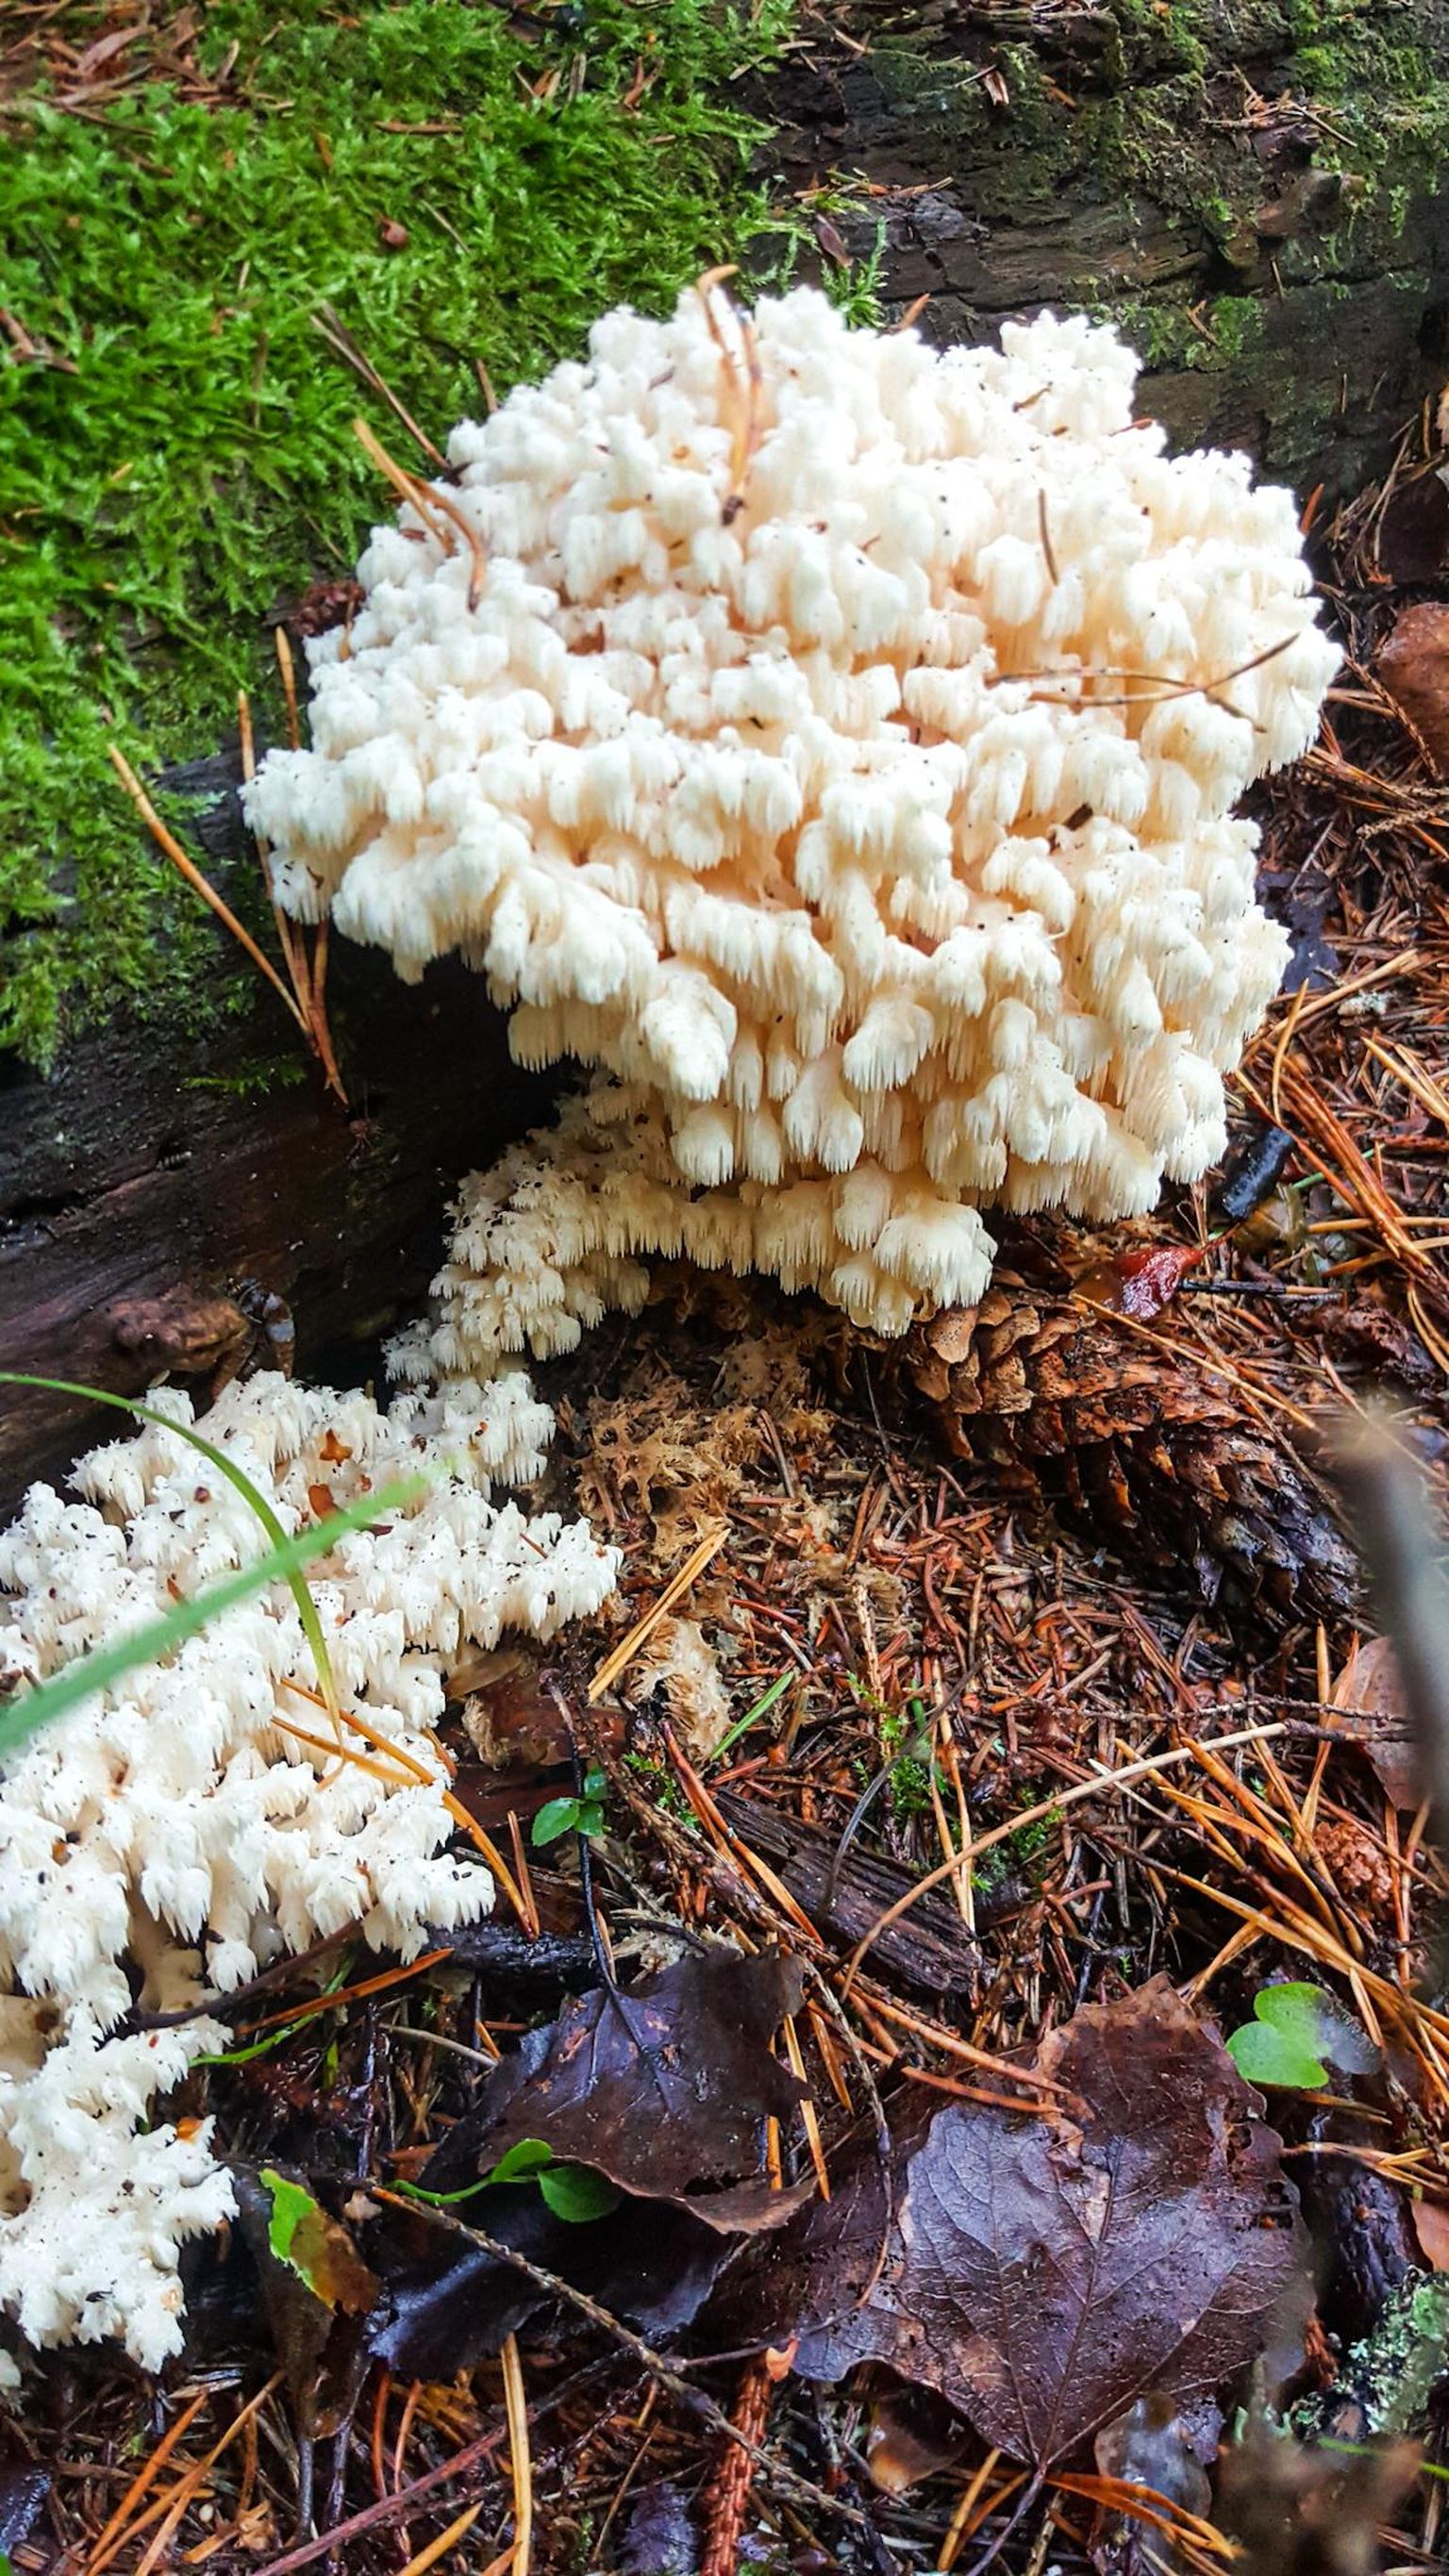 Vääriselupaikade üks indikaatorliike on korallnarmik, looduses harva esinev seen, mis leiti Pärnumaalt.